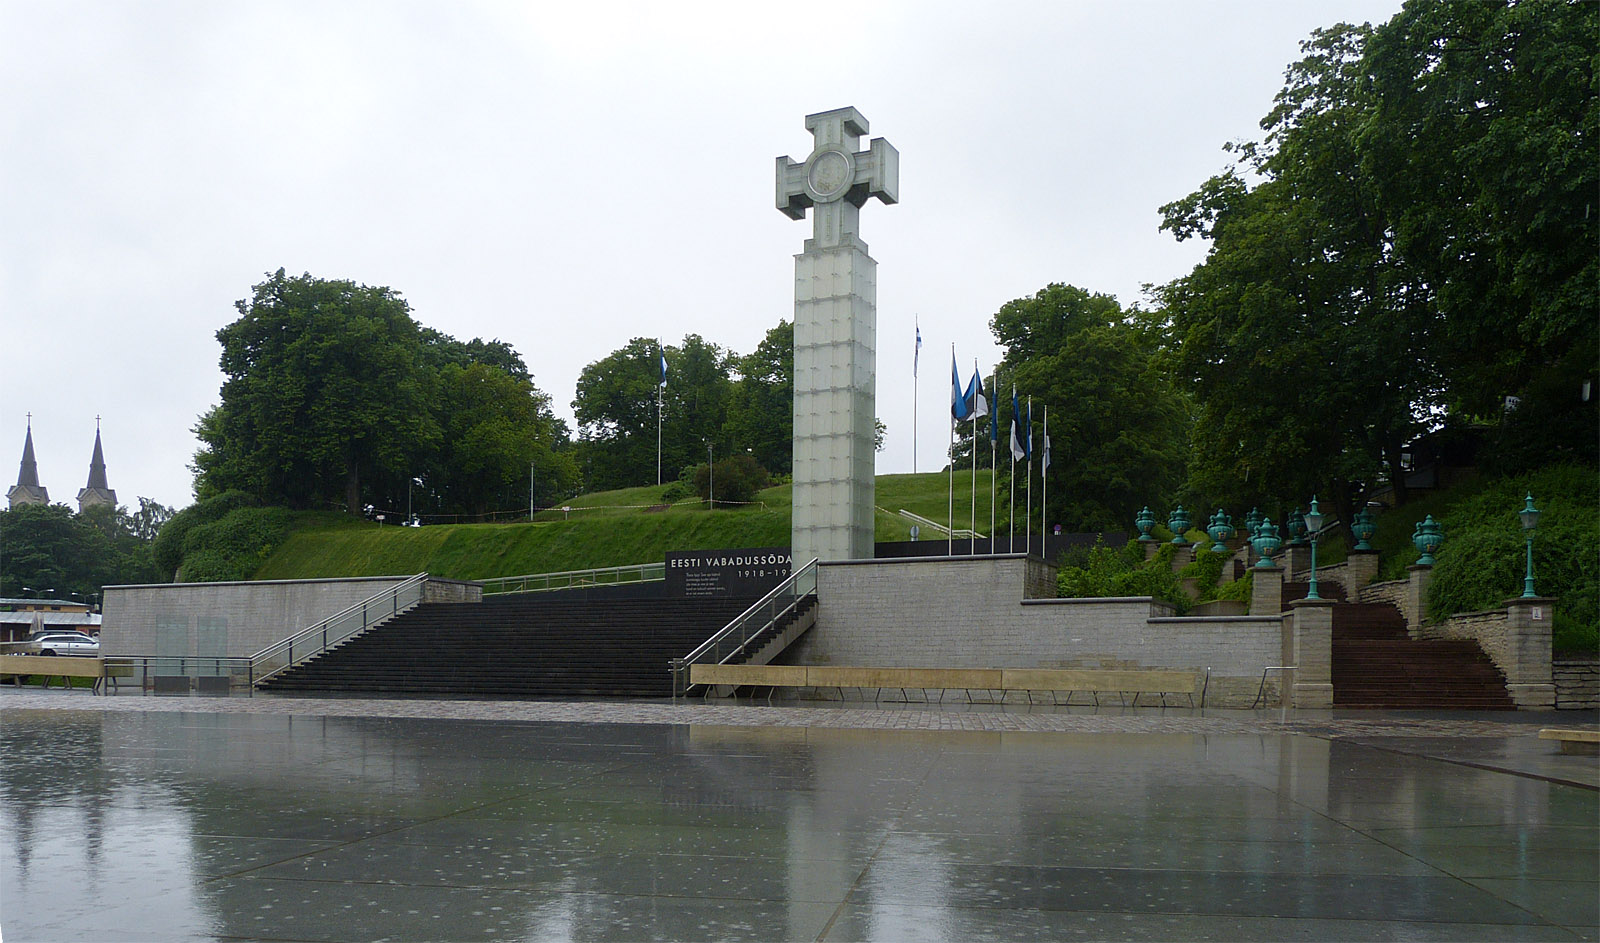 Independence Monument, Tallinn, Estonia